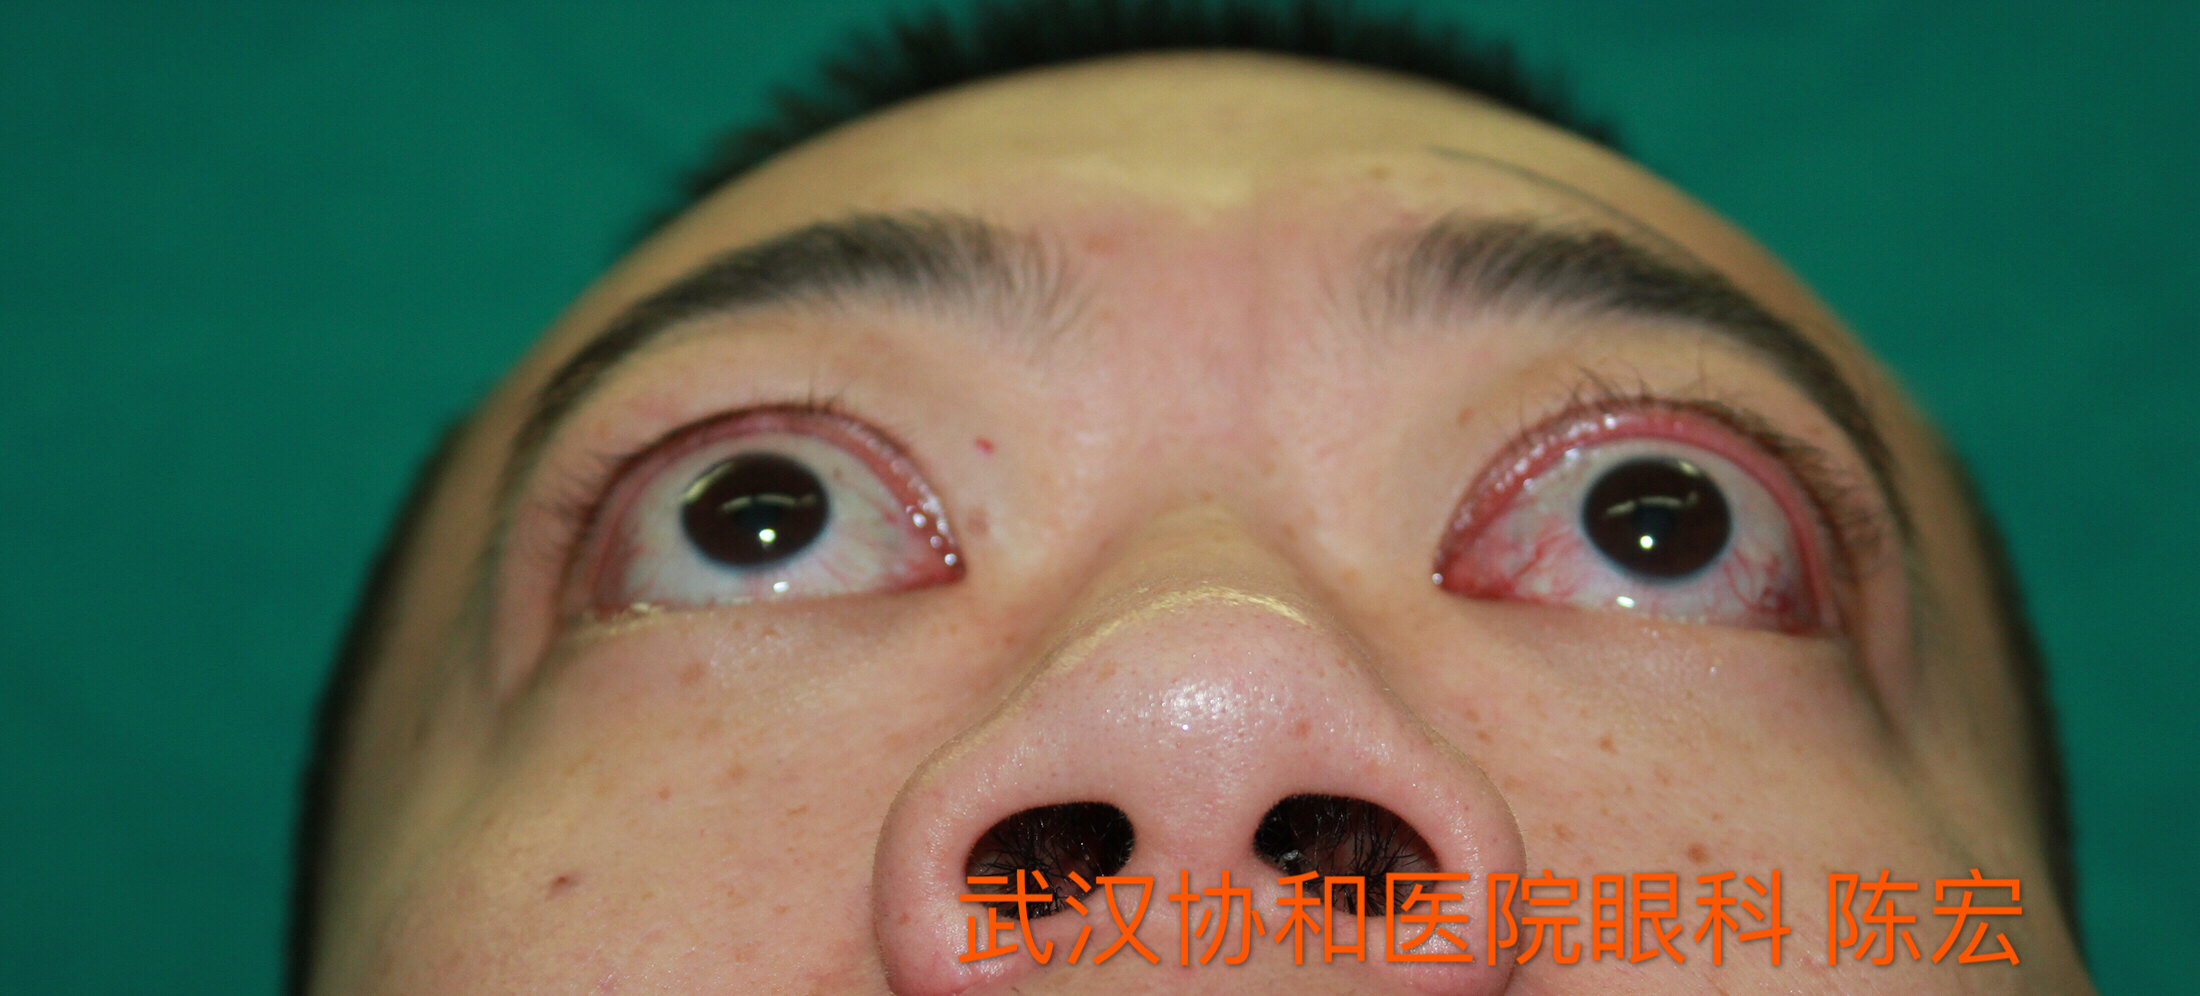 术前病情  双眼眼球突出,眼睑闭合不全,左眼暴露性角膜溃疡